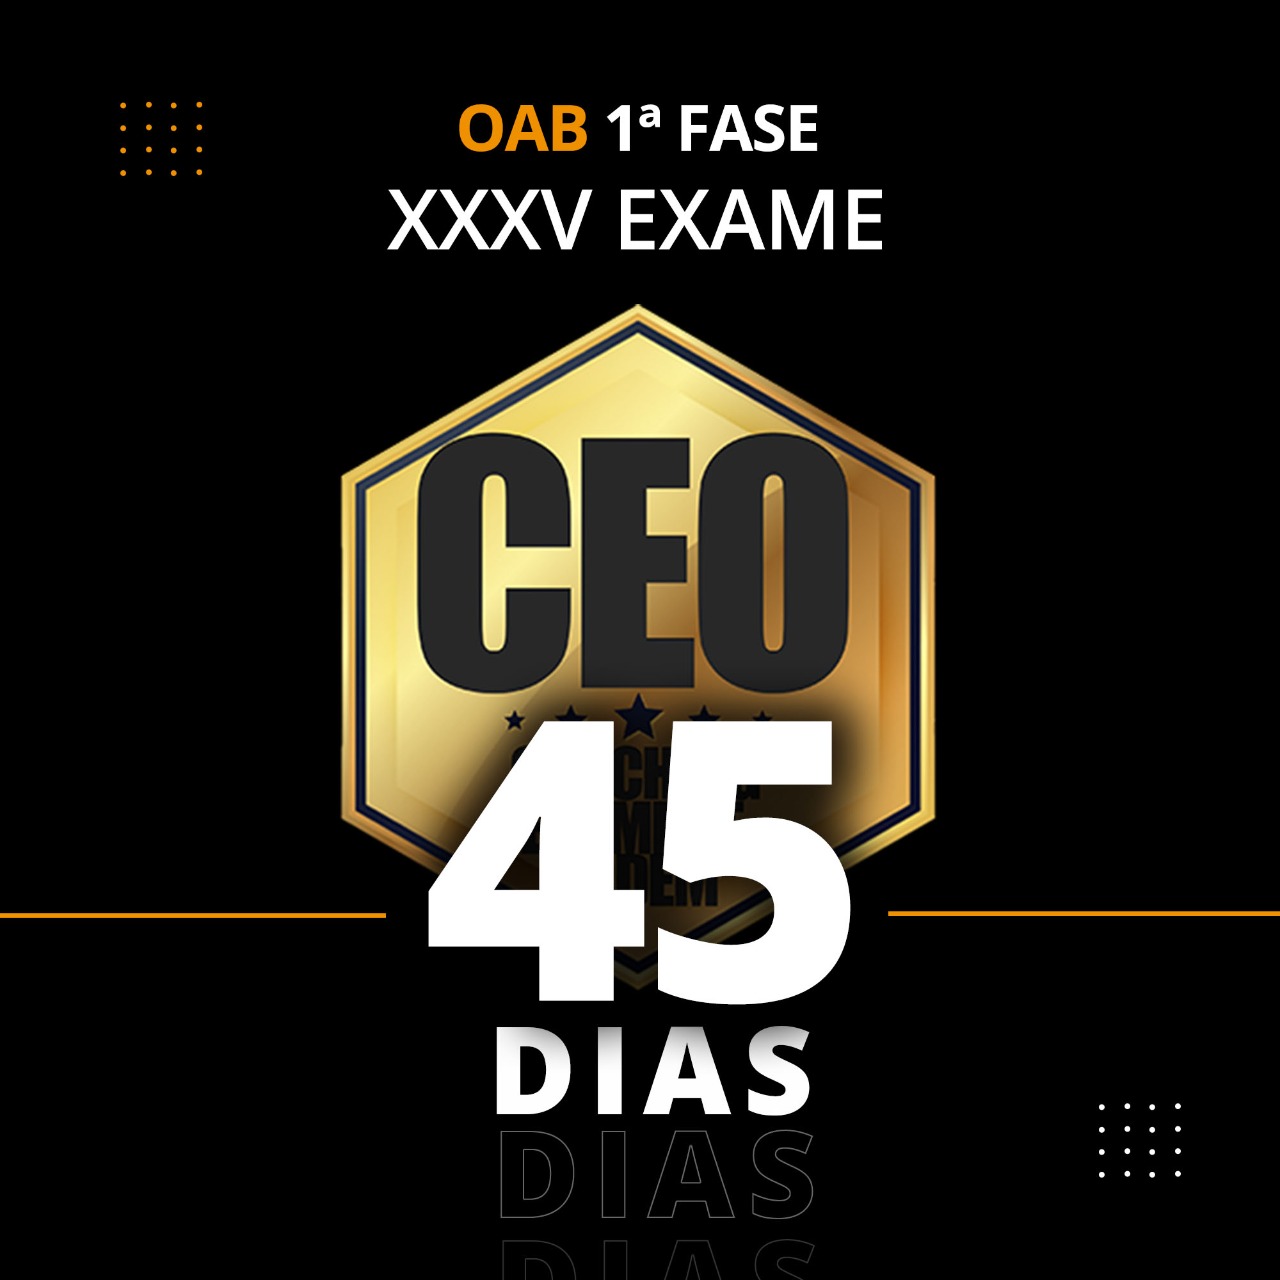 CEO 45 DIAS - XXXV EXAME